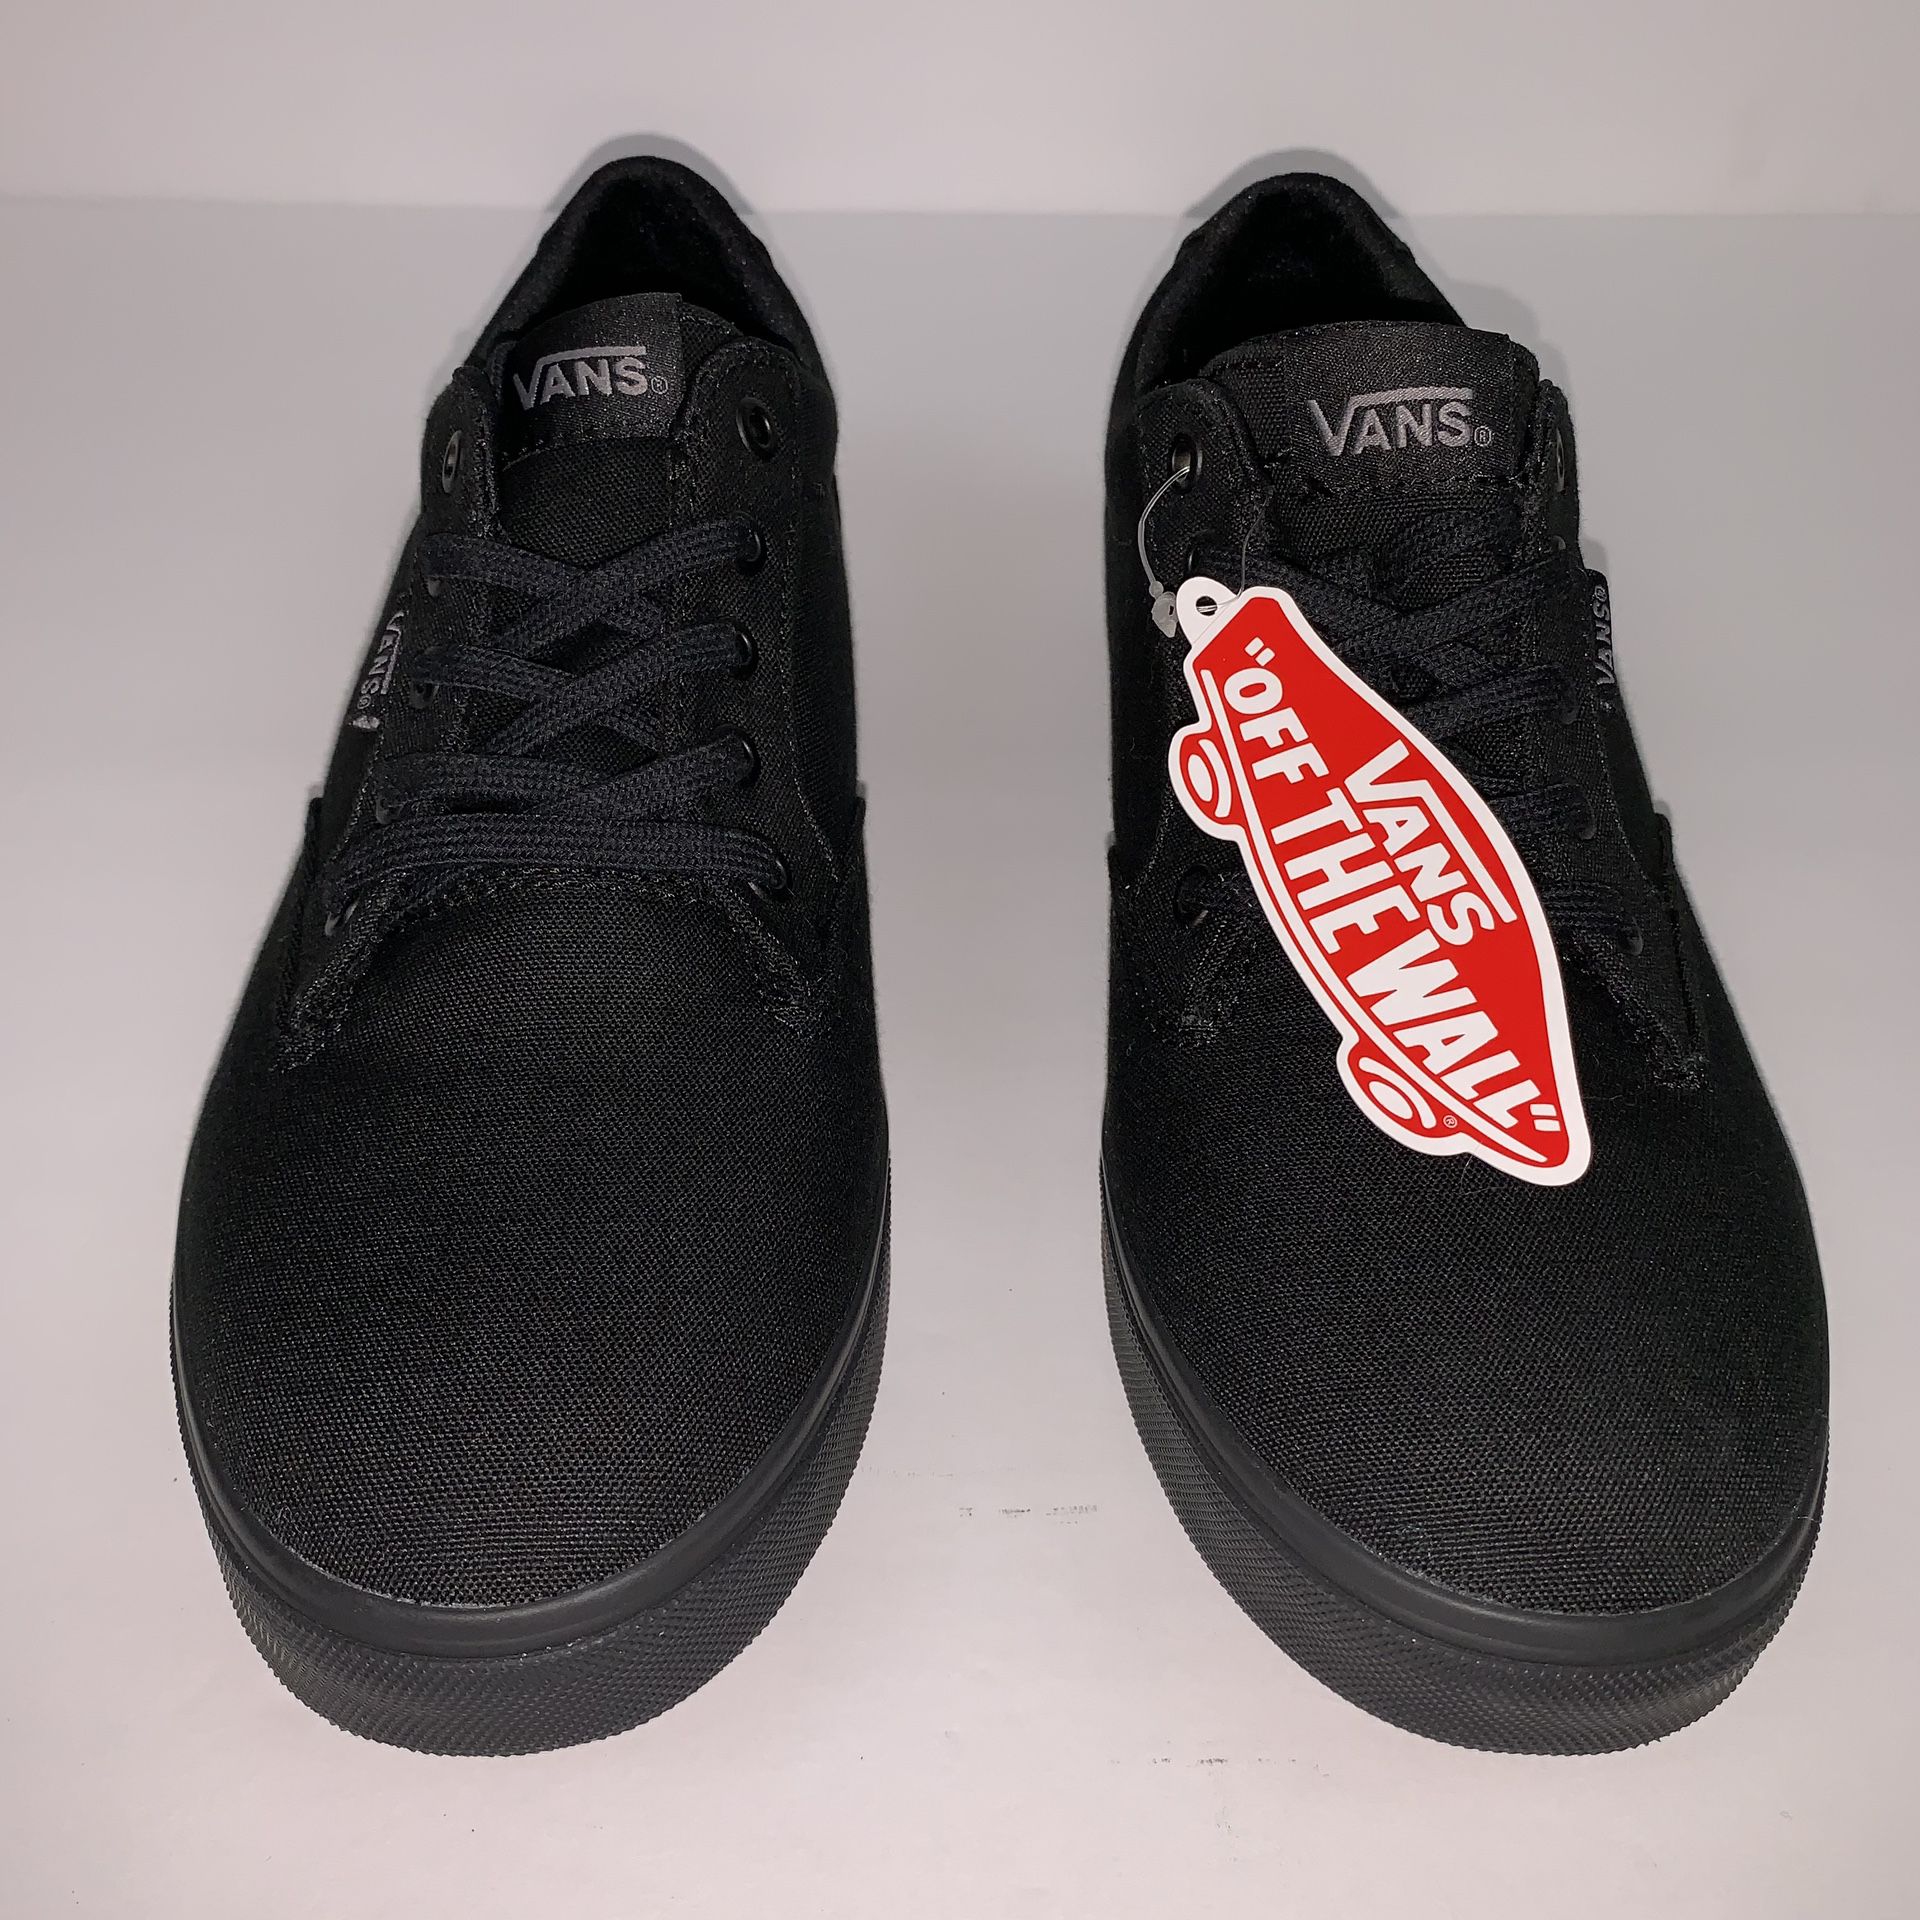 Vans women’s black sneakers size 8